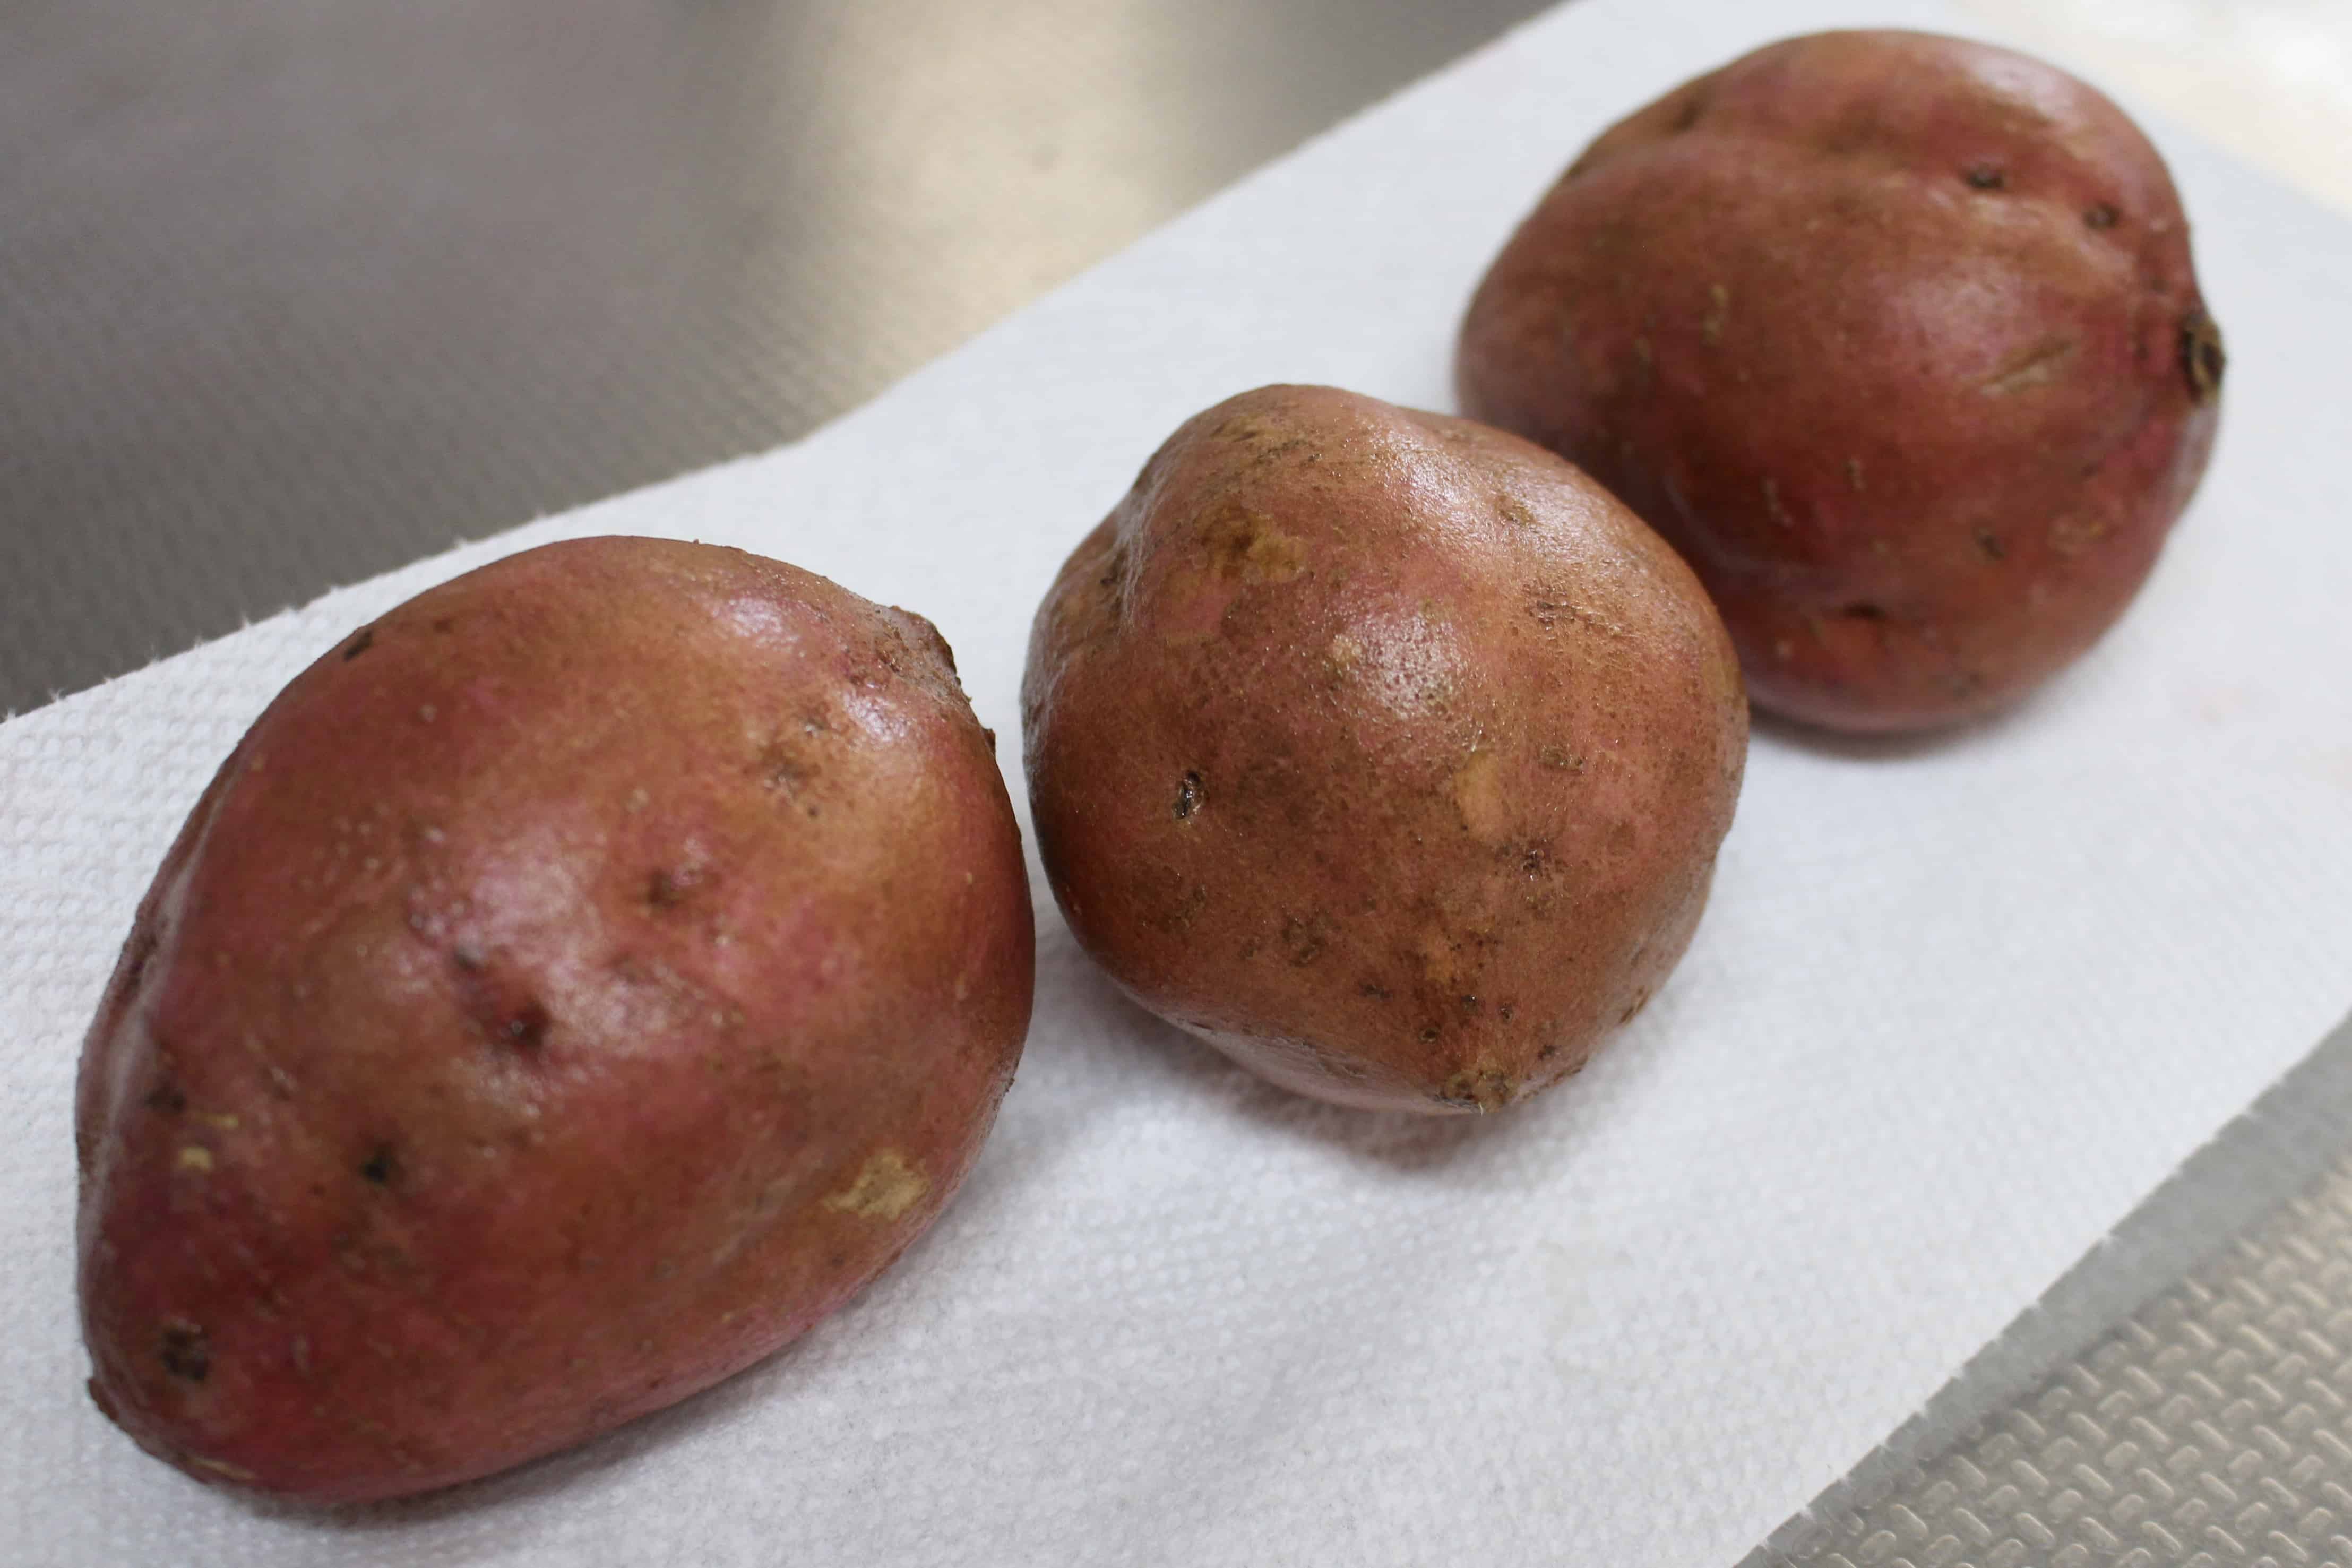 Washed Japanese sweet potatoes